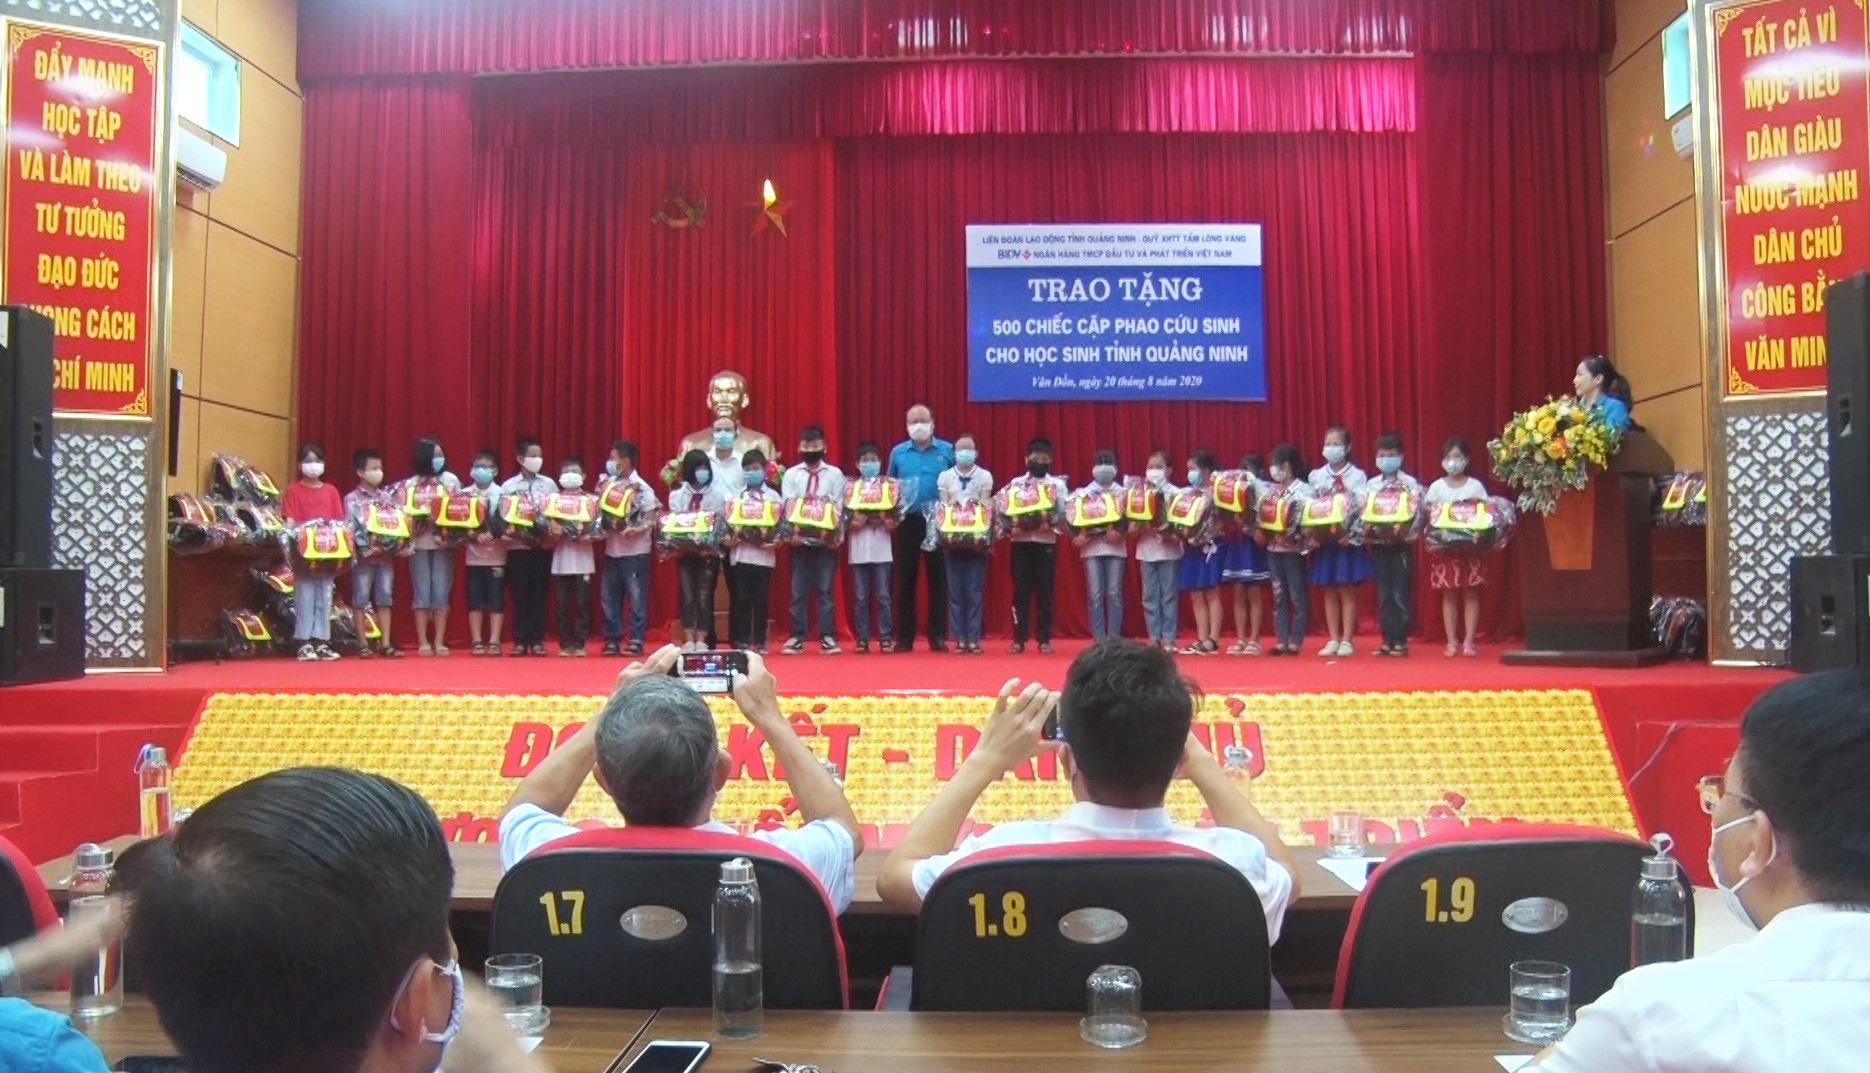 500 cawpjphao cứu sinh được hỗ trợ cho các em học sinh vùng sông nước của tỉnh QN